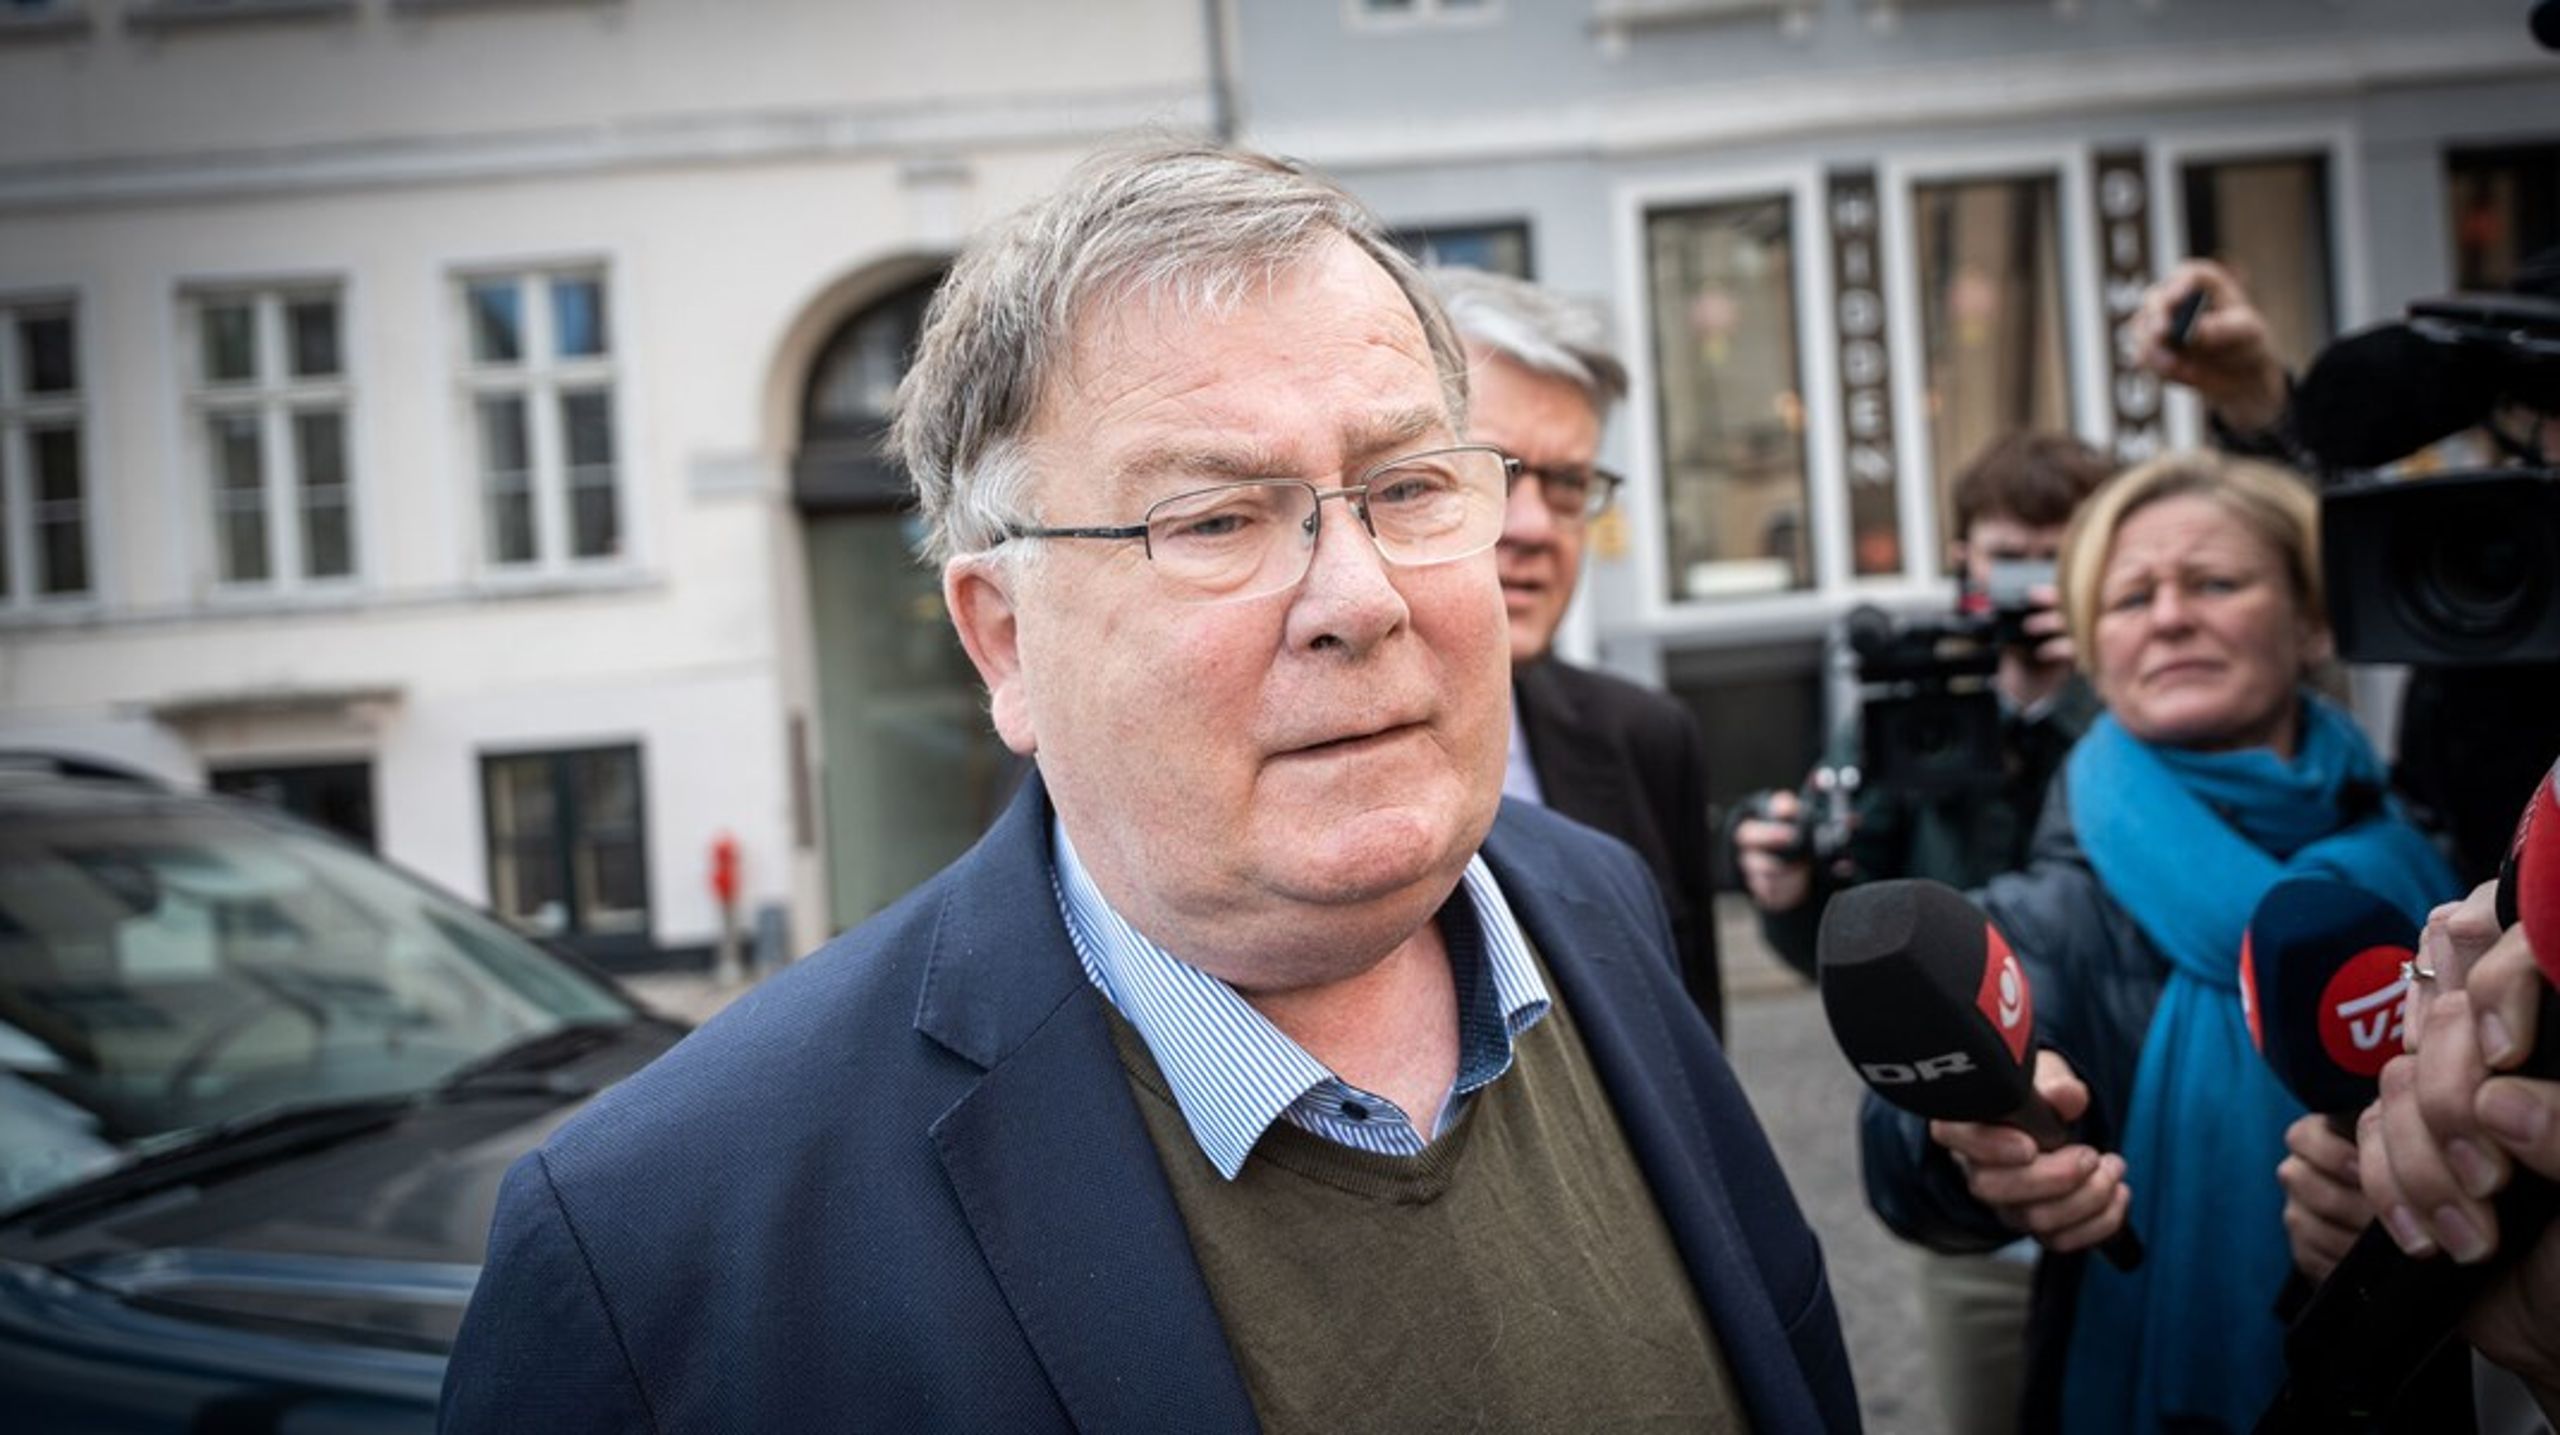 56 minutter efter anklagemyndighedens melding om at afblæse straffesagerne mod Claus Hjort Frederiksen og Lars Findsen, havde regeringen taget stilling, skriver Kristian Hegaard.